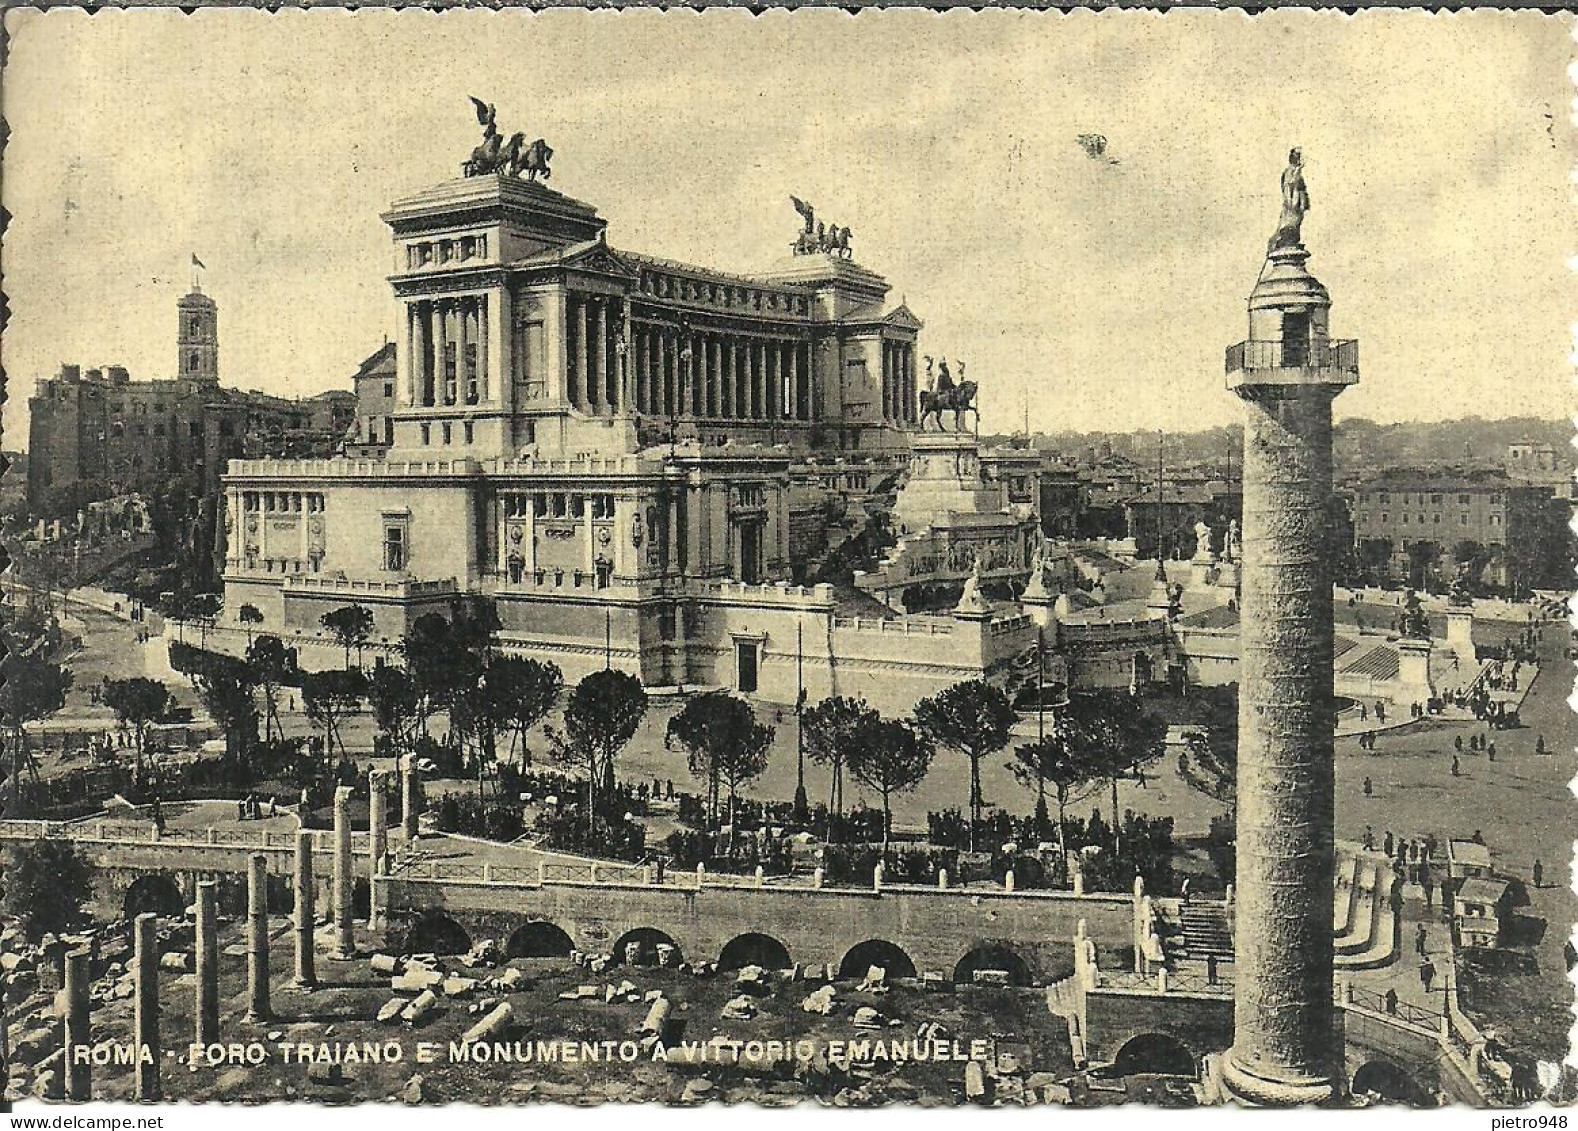 Roma (Lazio) Colonna E Foro Traiano E Altare Della Patria (Vittoriano), Trajan Forum And Monument V. Emanuele II - Altare Della Patria